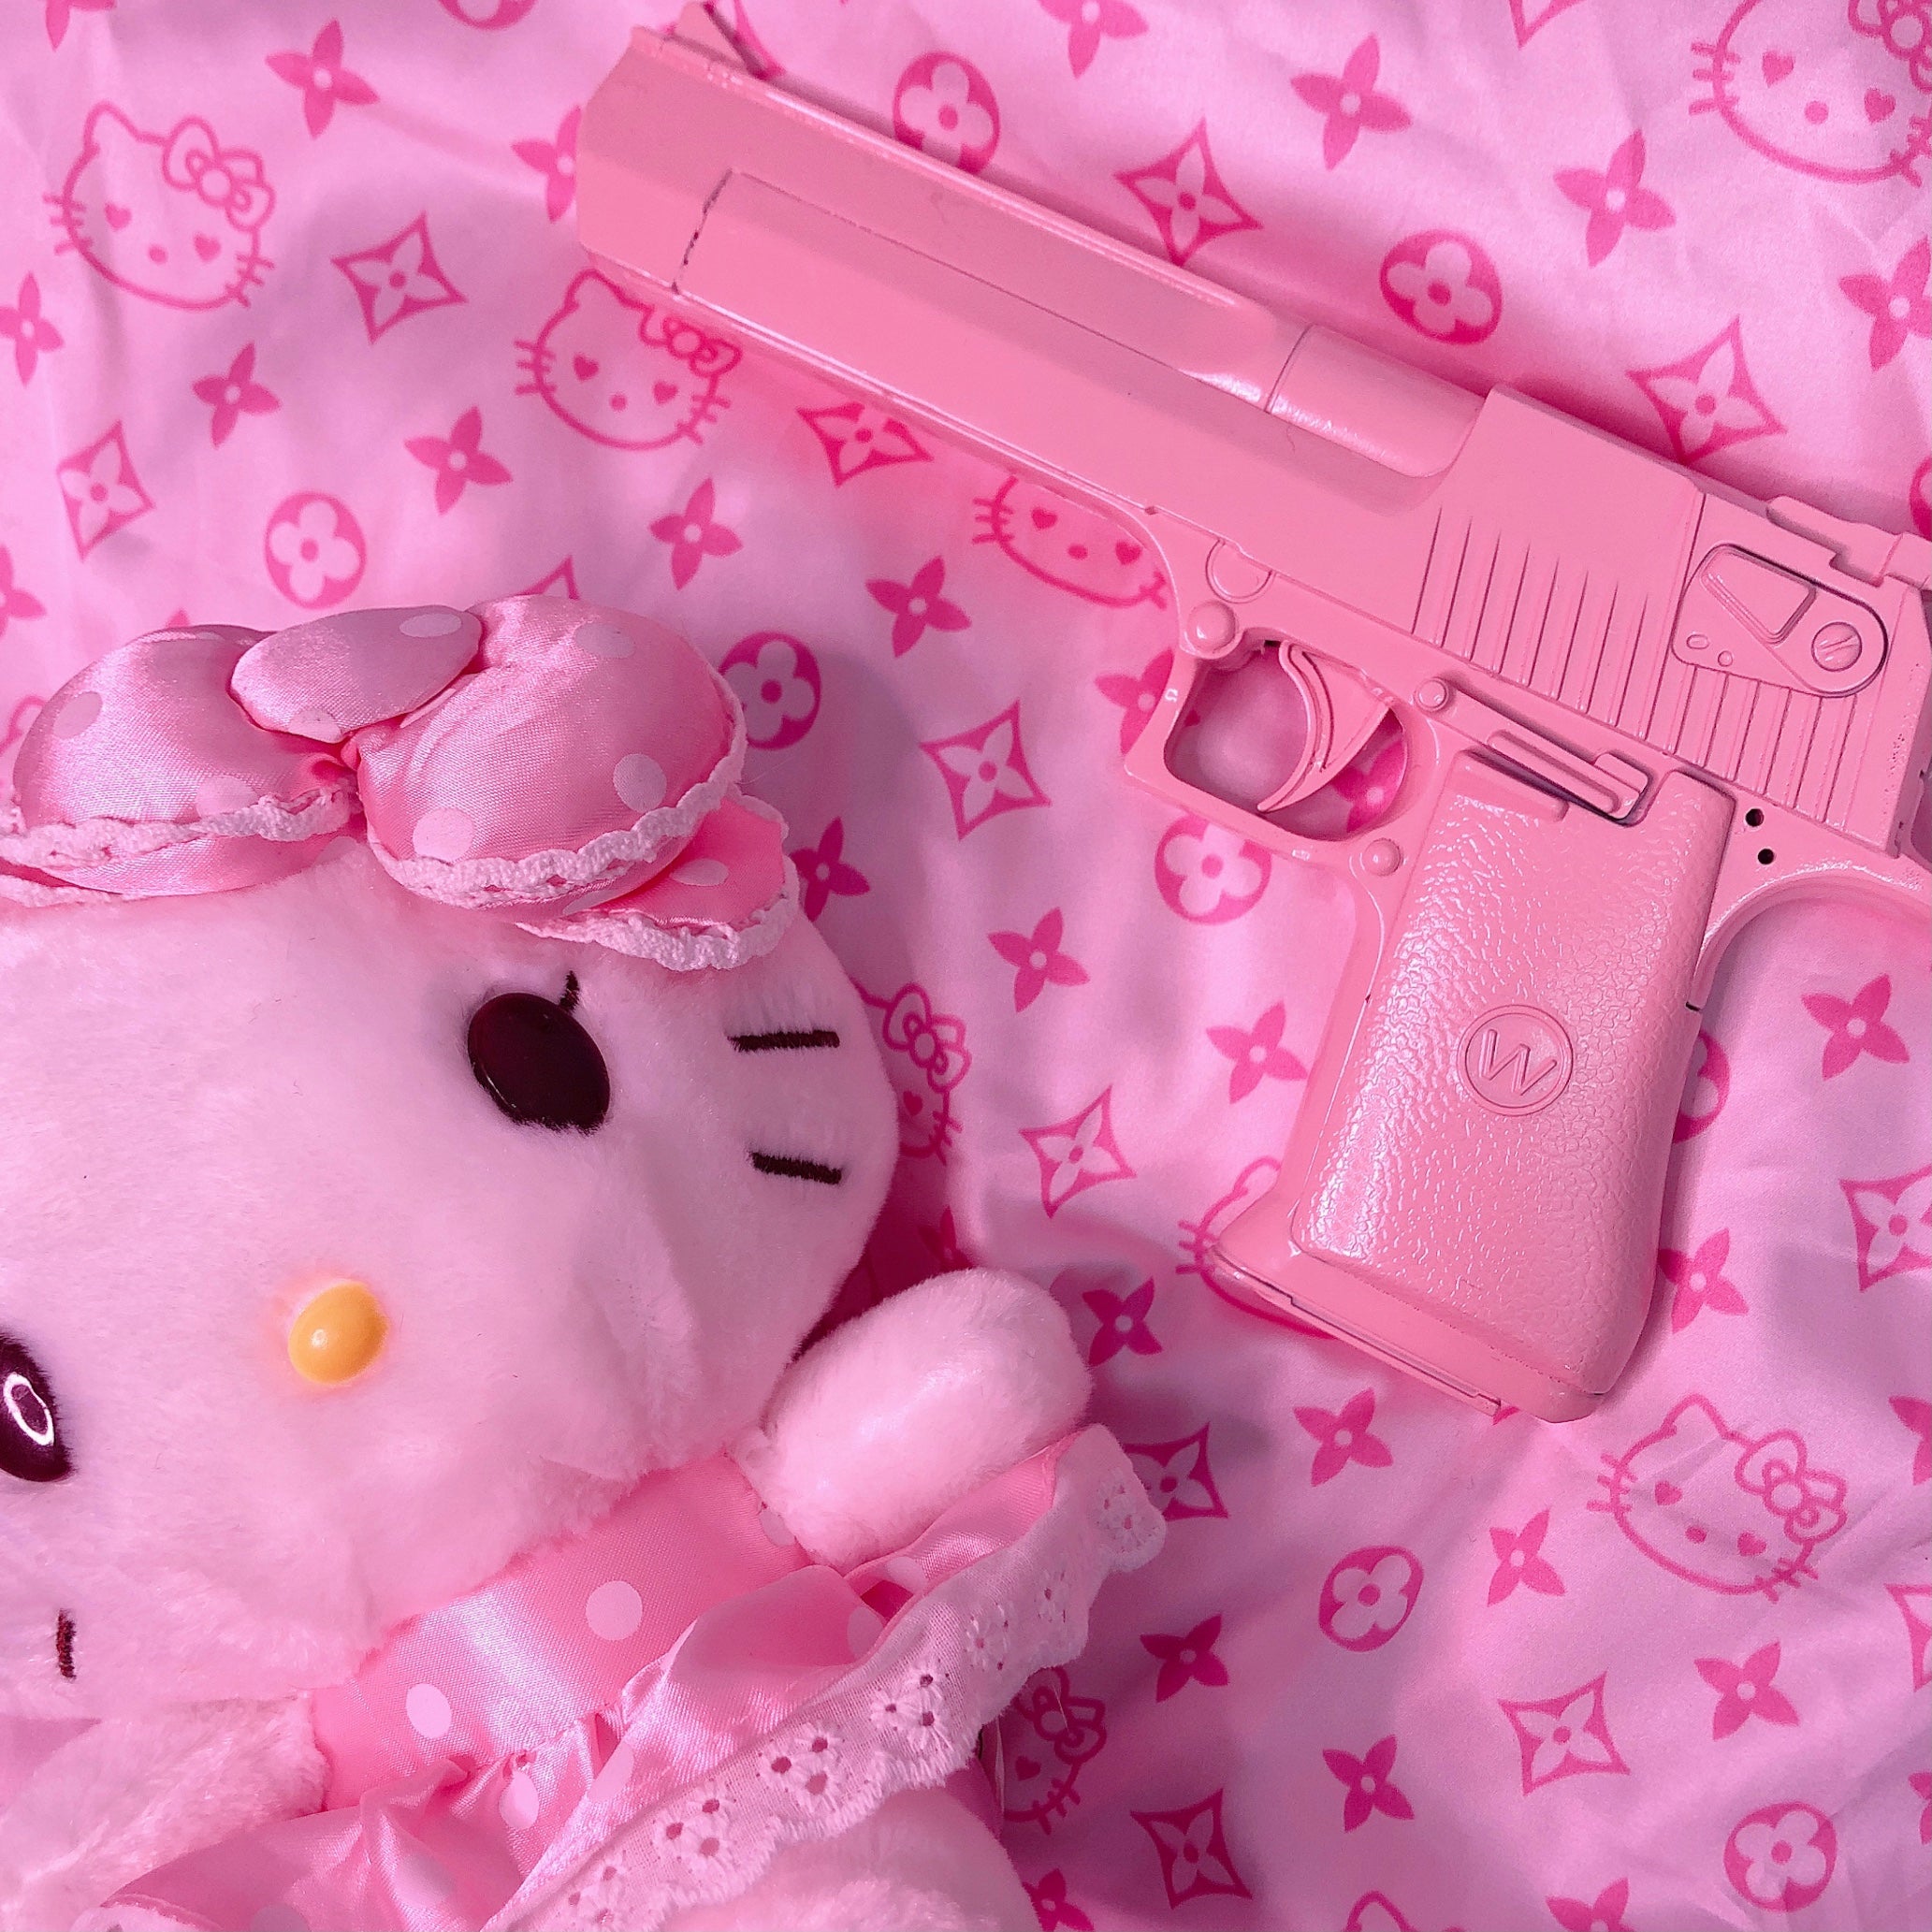 Baby Pink Toy Gun